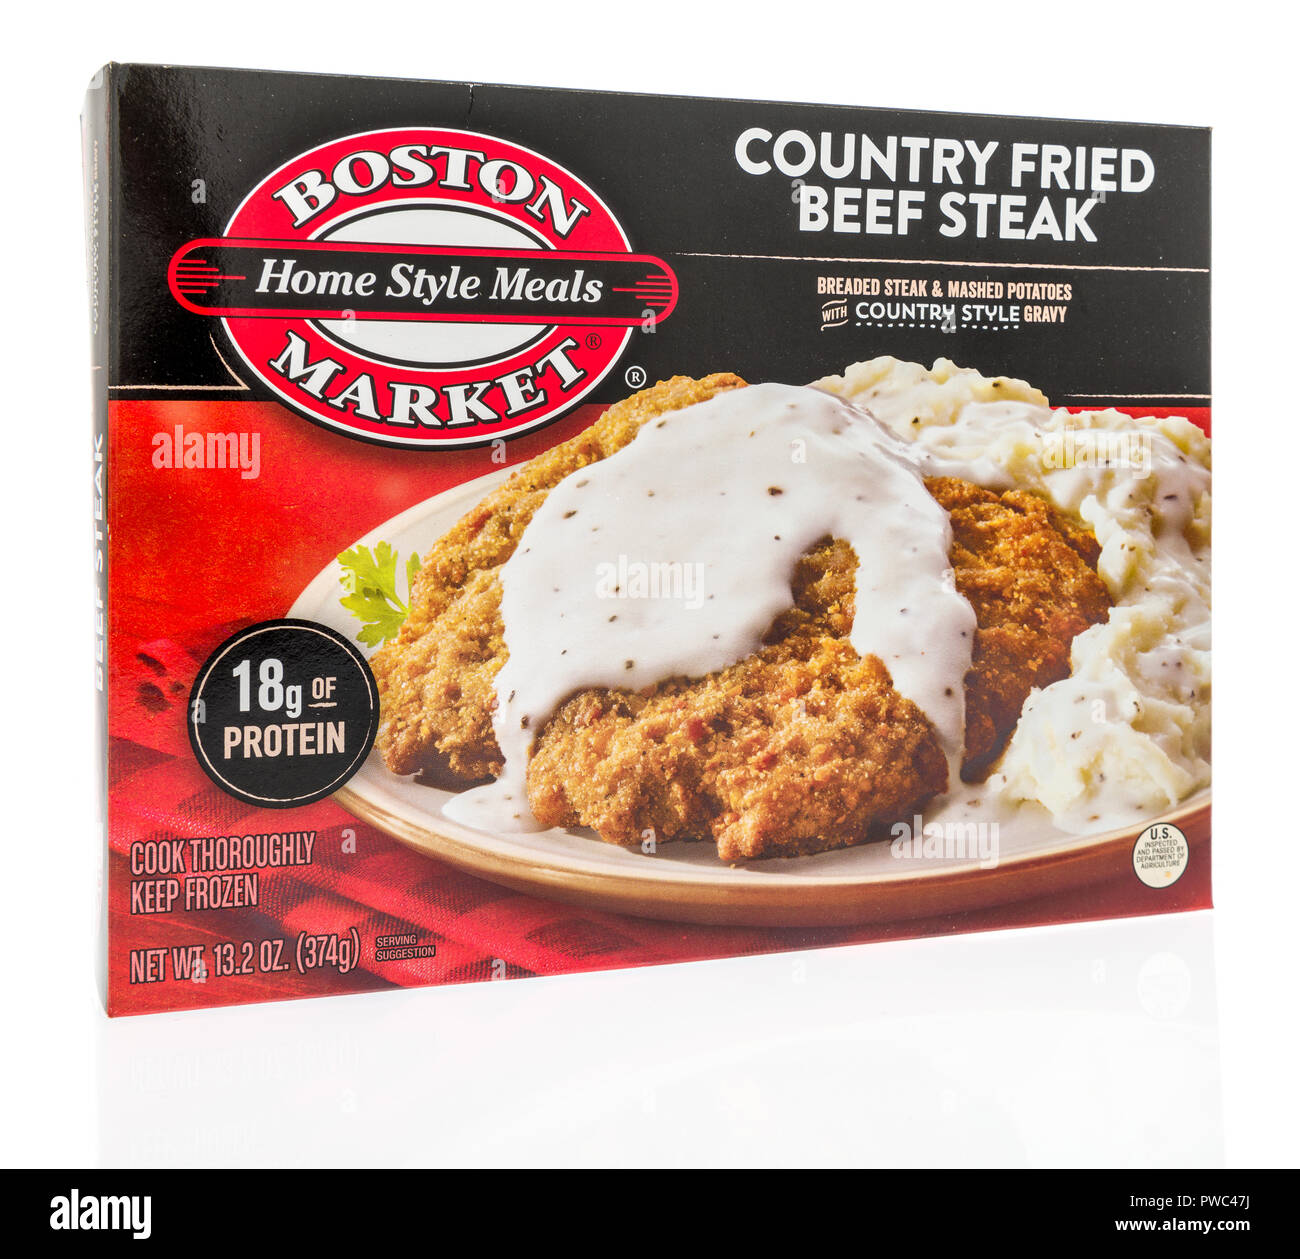 Winneconne, WI - 29 septembre 2018 : une boîte de Boston Market accueil repas de style en pays fried steak de boeuf sur un fond isolé Banque D'Images